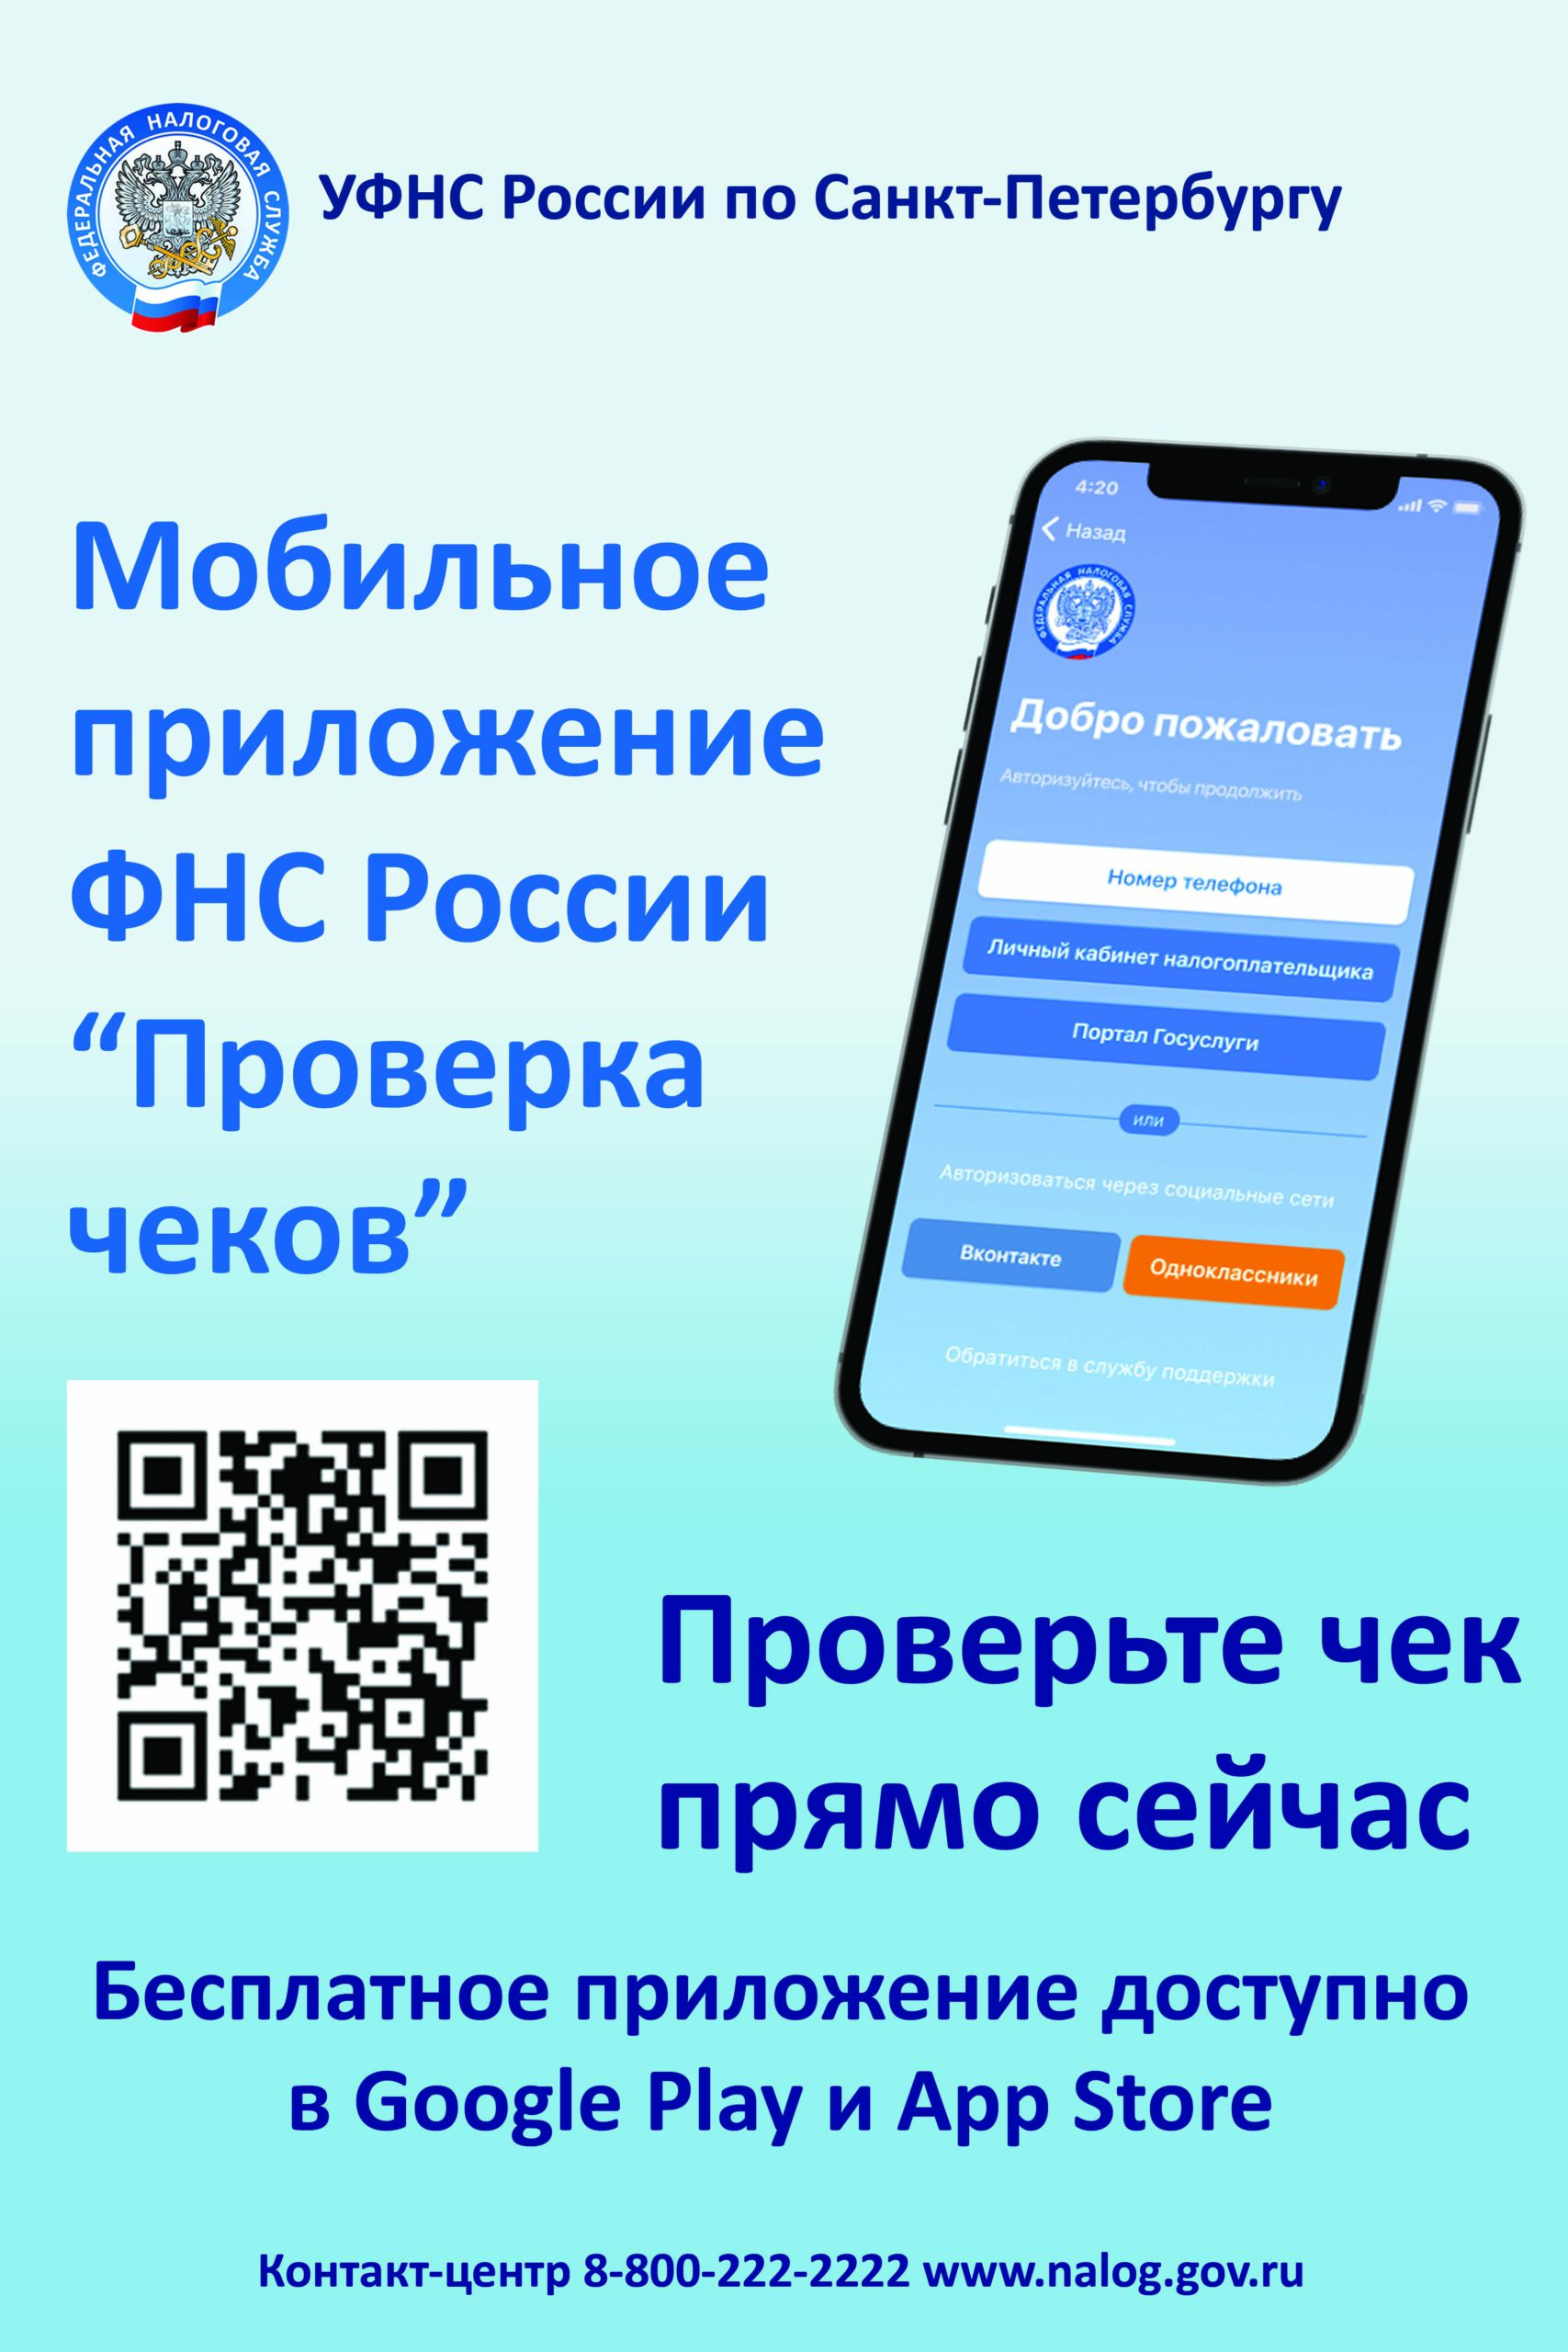 Мобильное приложение ФНС России «Проверка членов»